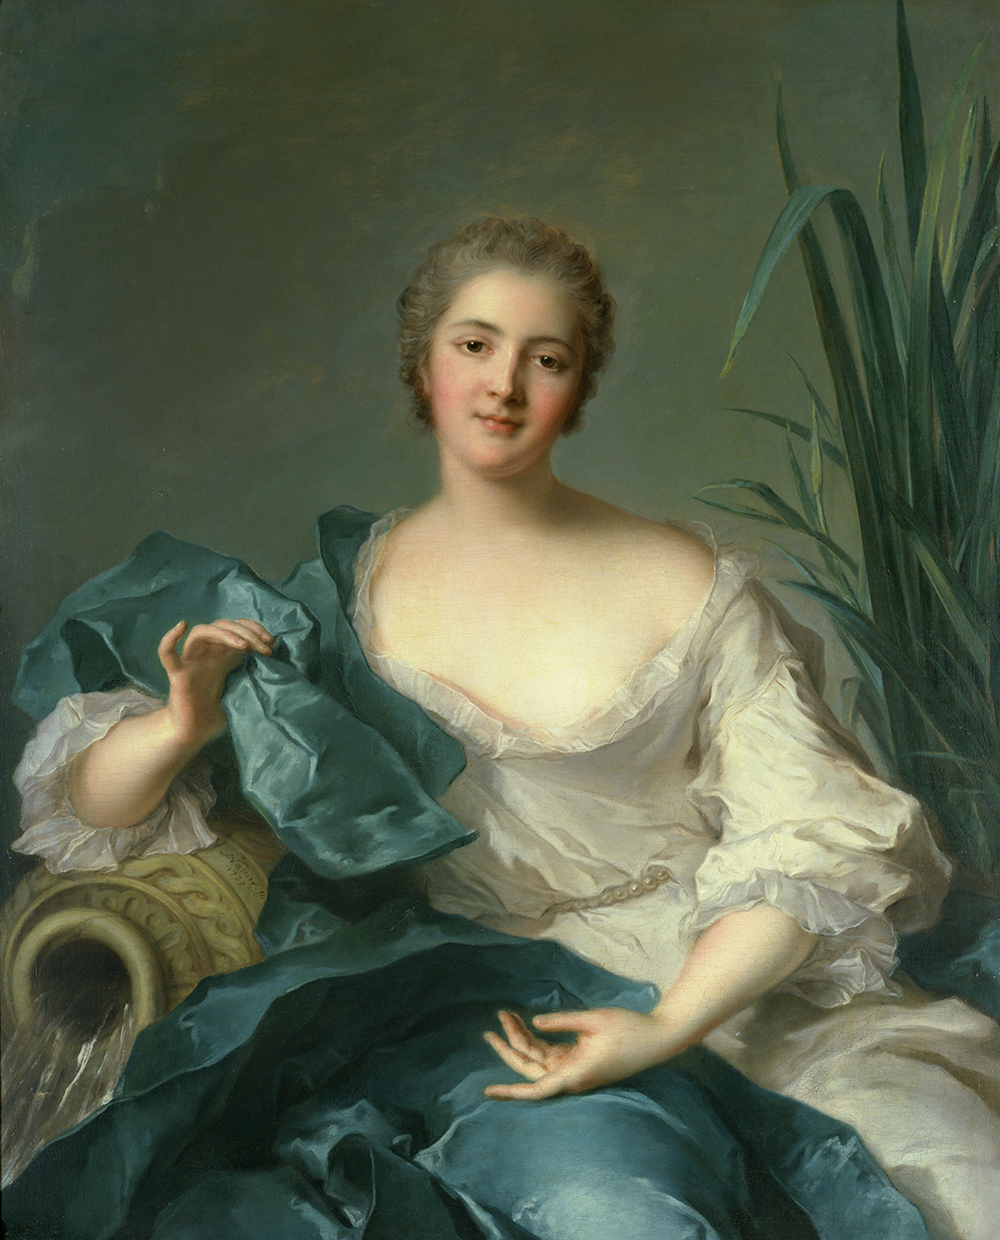 photo:Jean-Marc Nattier
Portrait of Madame Marie-Henriette-Berthelet de Pleuneuf